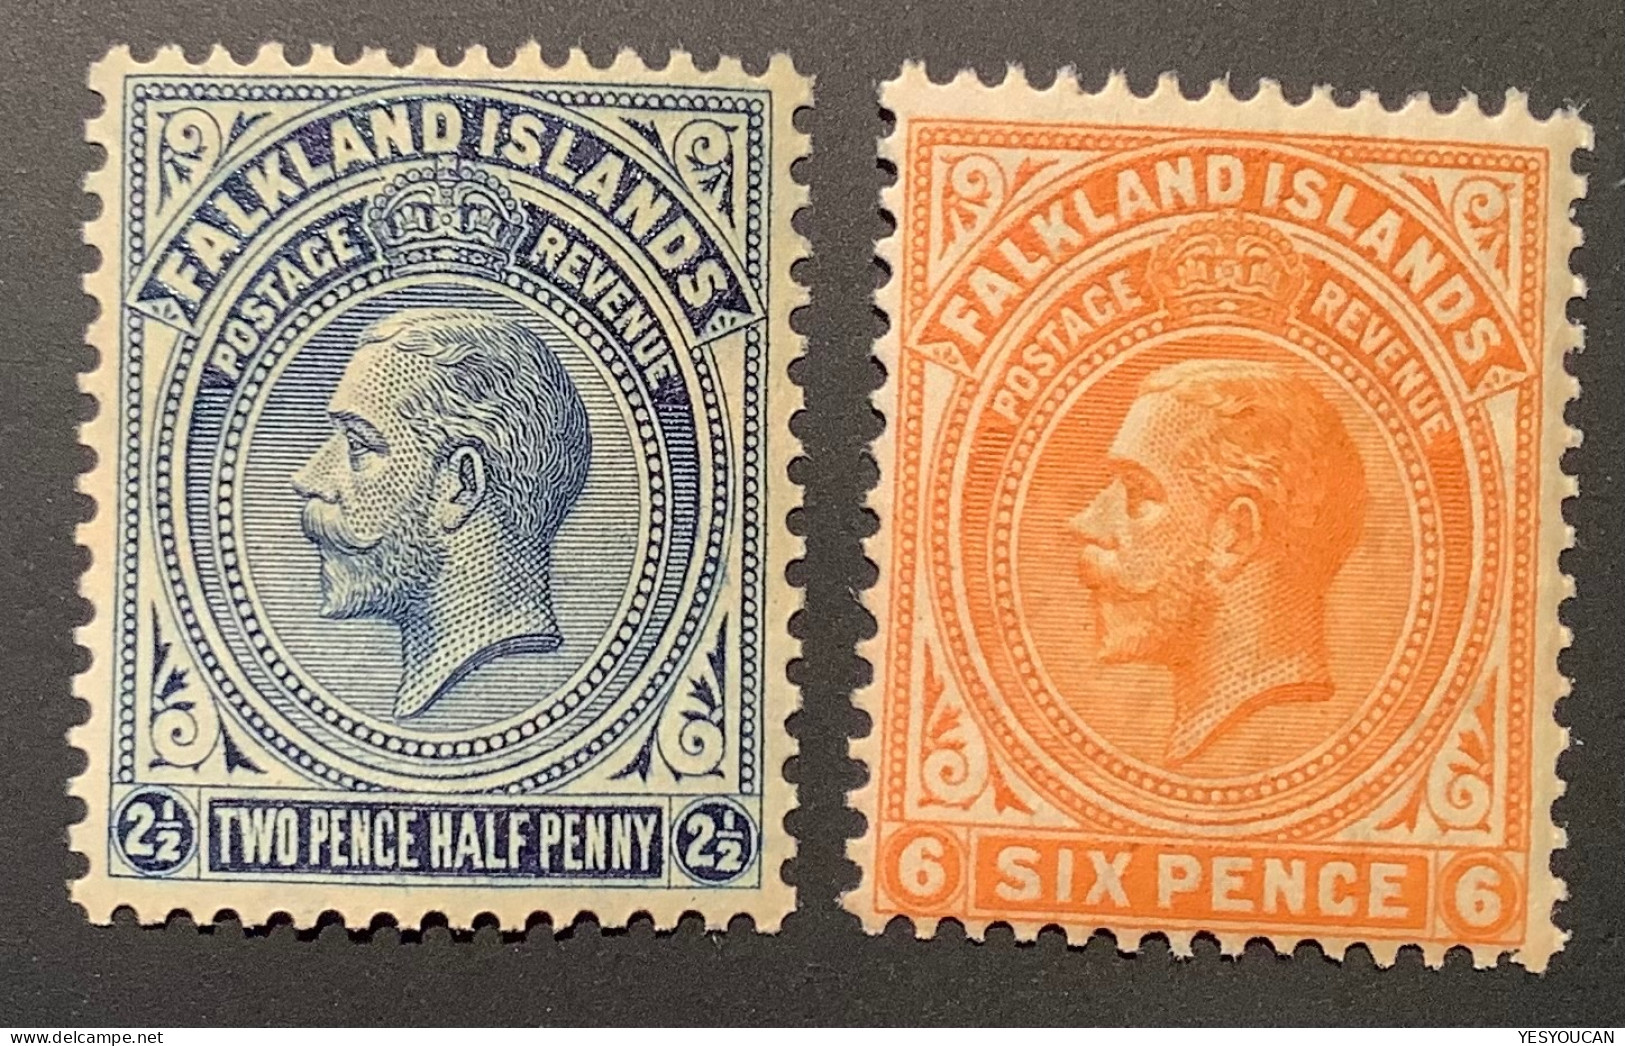 Falkland Islands SG76+78 Shade? VF MNH**, 1921-28 Wmk Script CA, 2 1/2d+6d  (Iles Falkland British Empire - Islas Malvinas